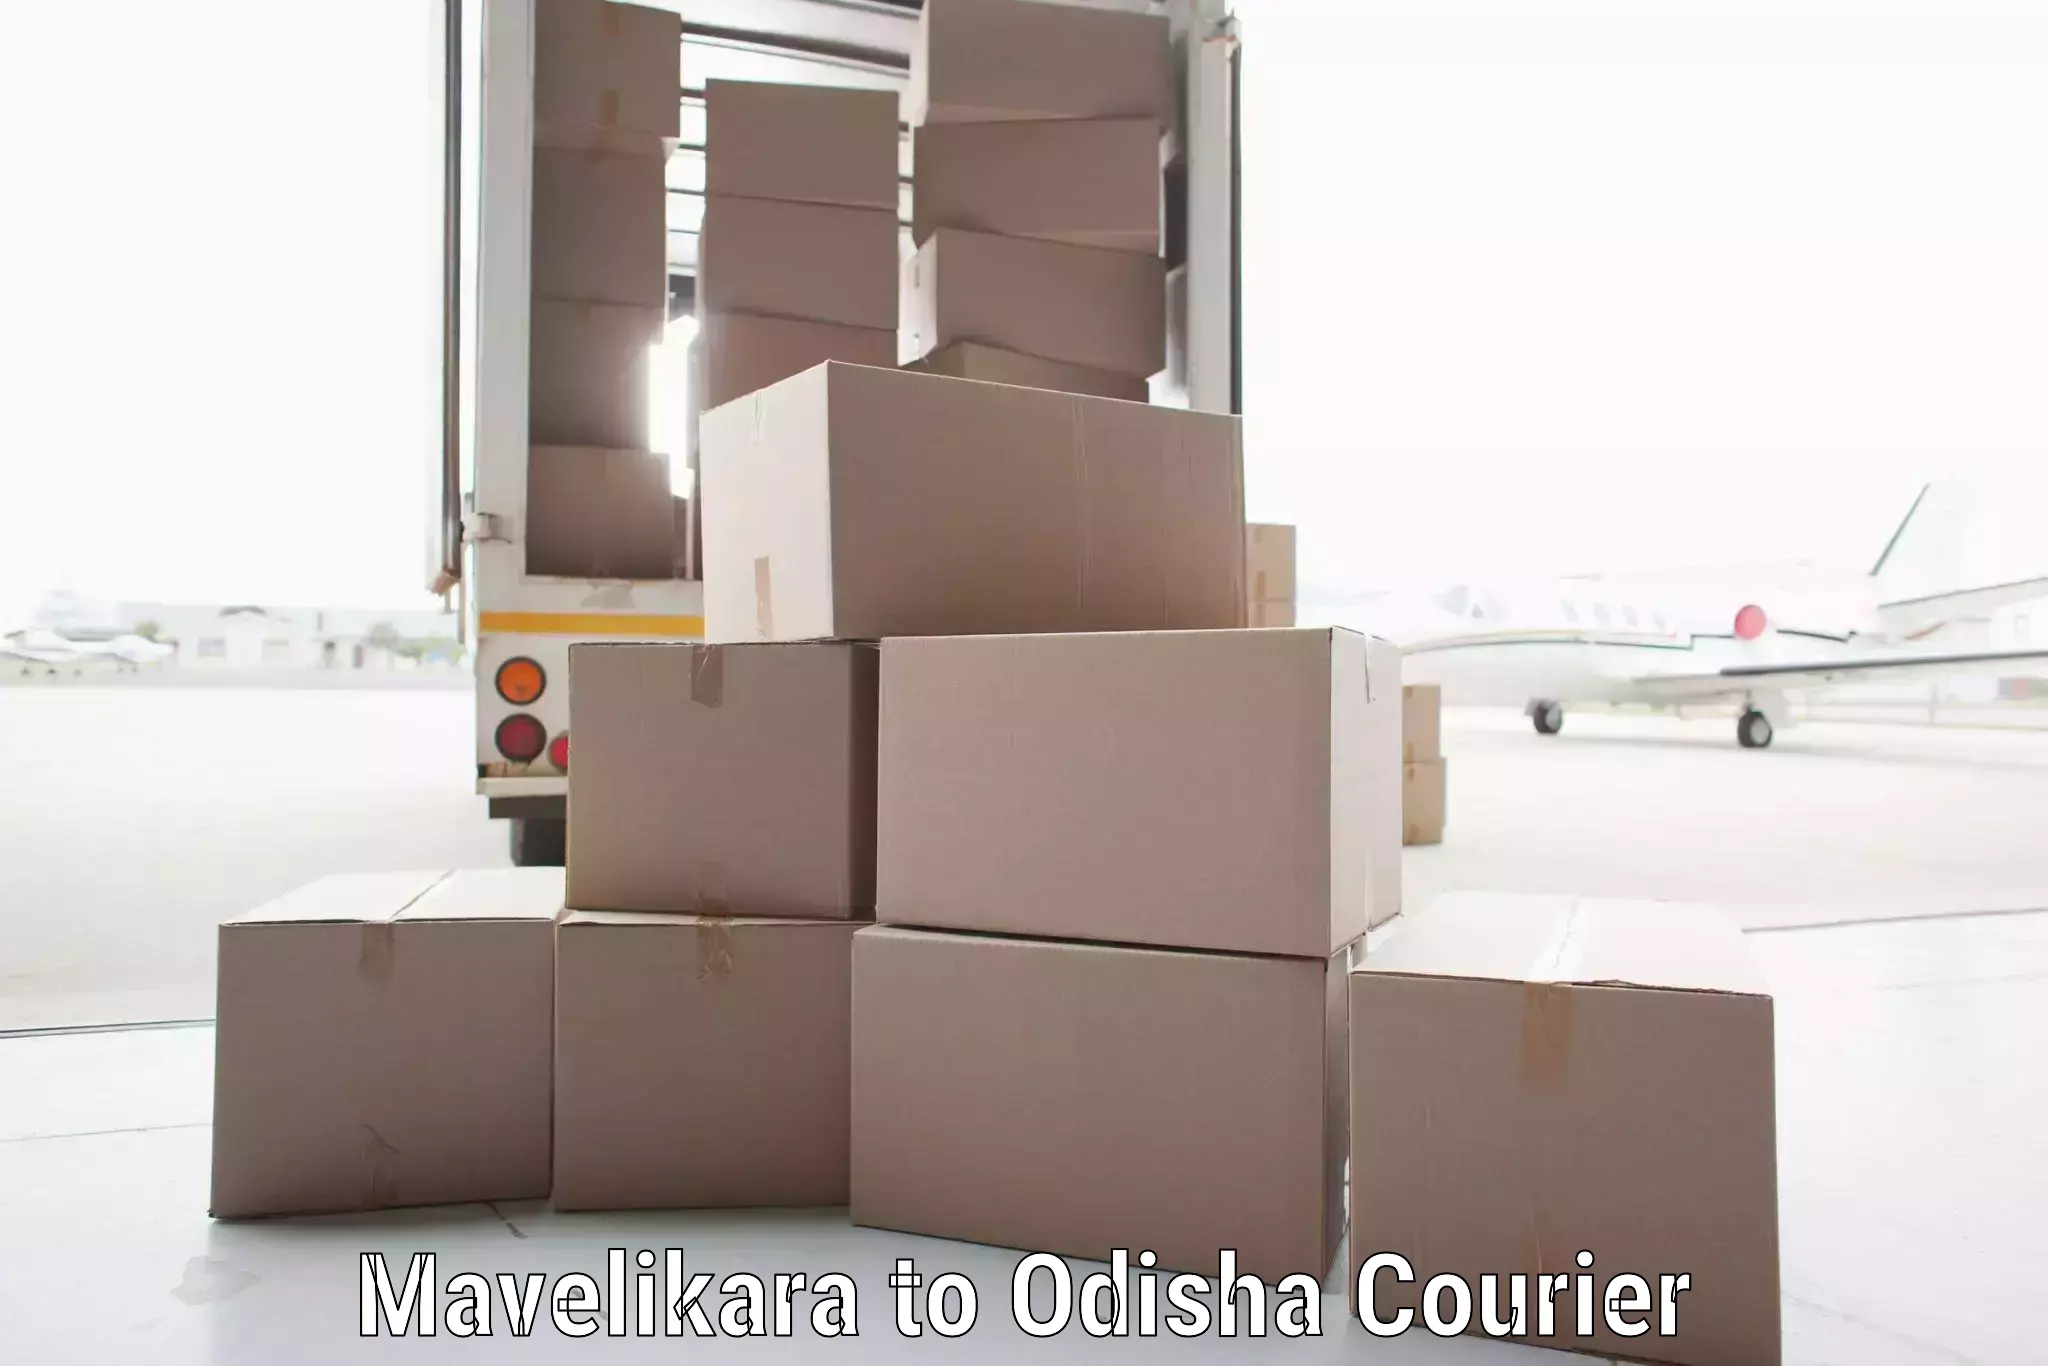 International logistics solutions Mavelikara to Udala